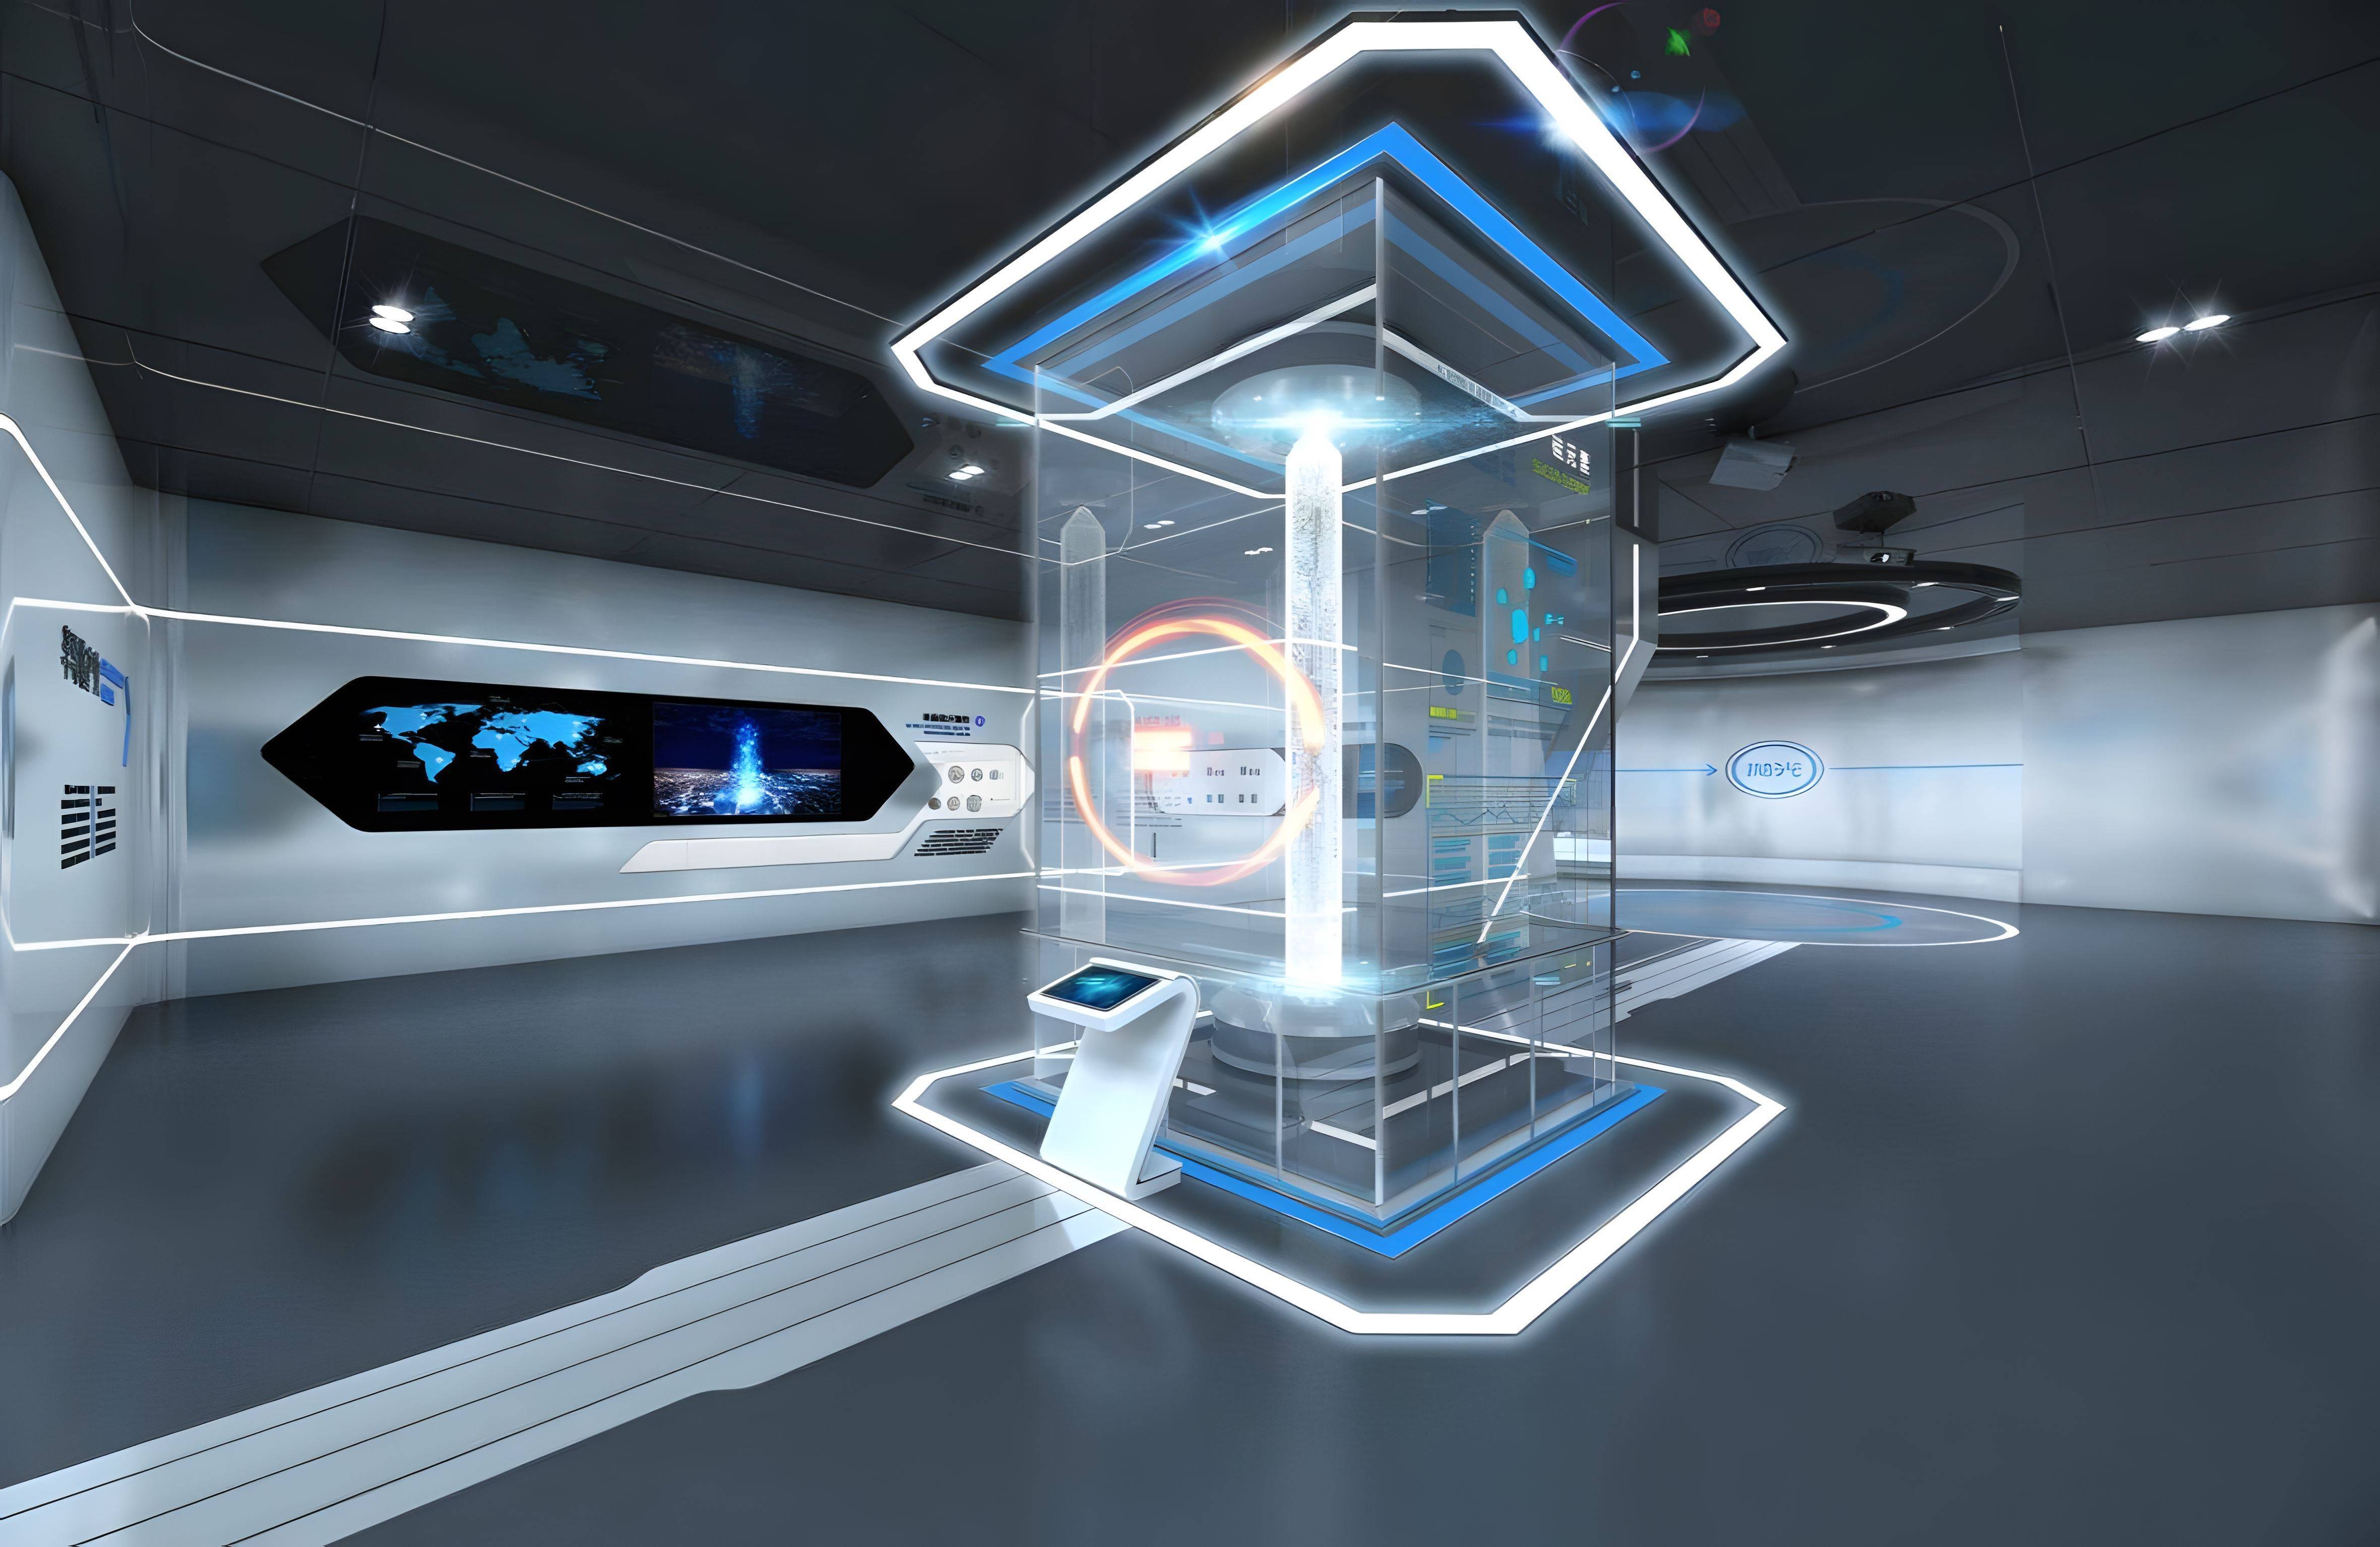 图片展示了一个现代化的控制室或实验室，内部装饰科技感十足，有多个显示屏和一个中央透明显示装置。